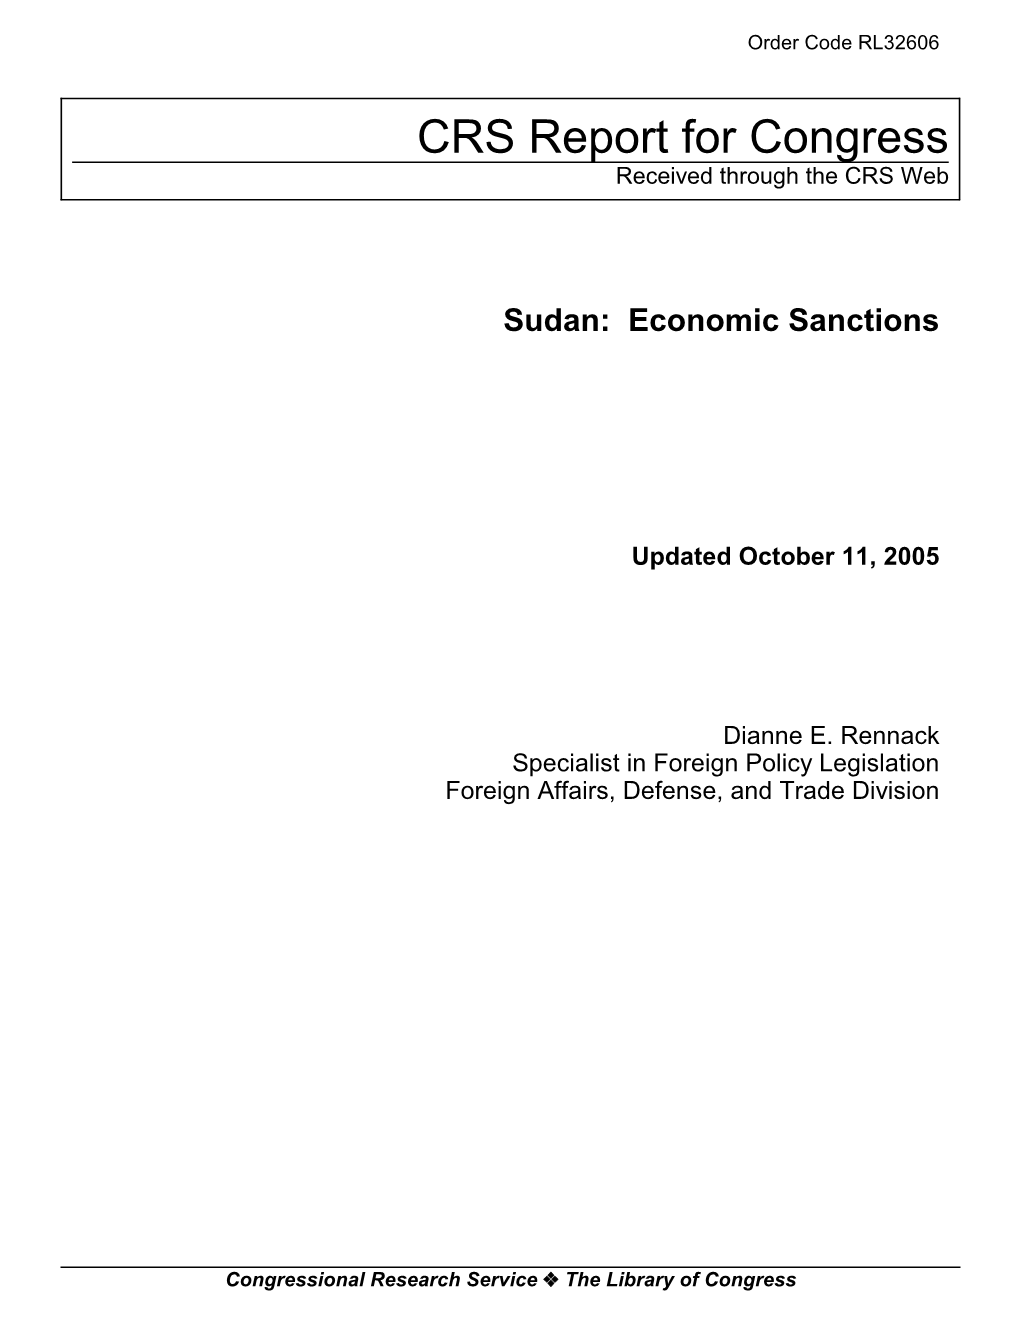 Sudan: Economic Sanctions